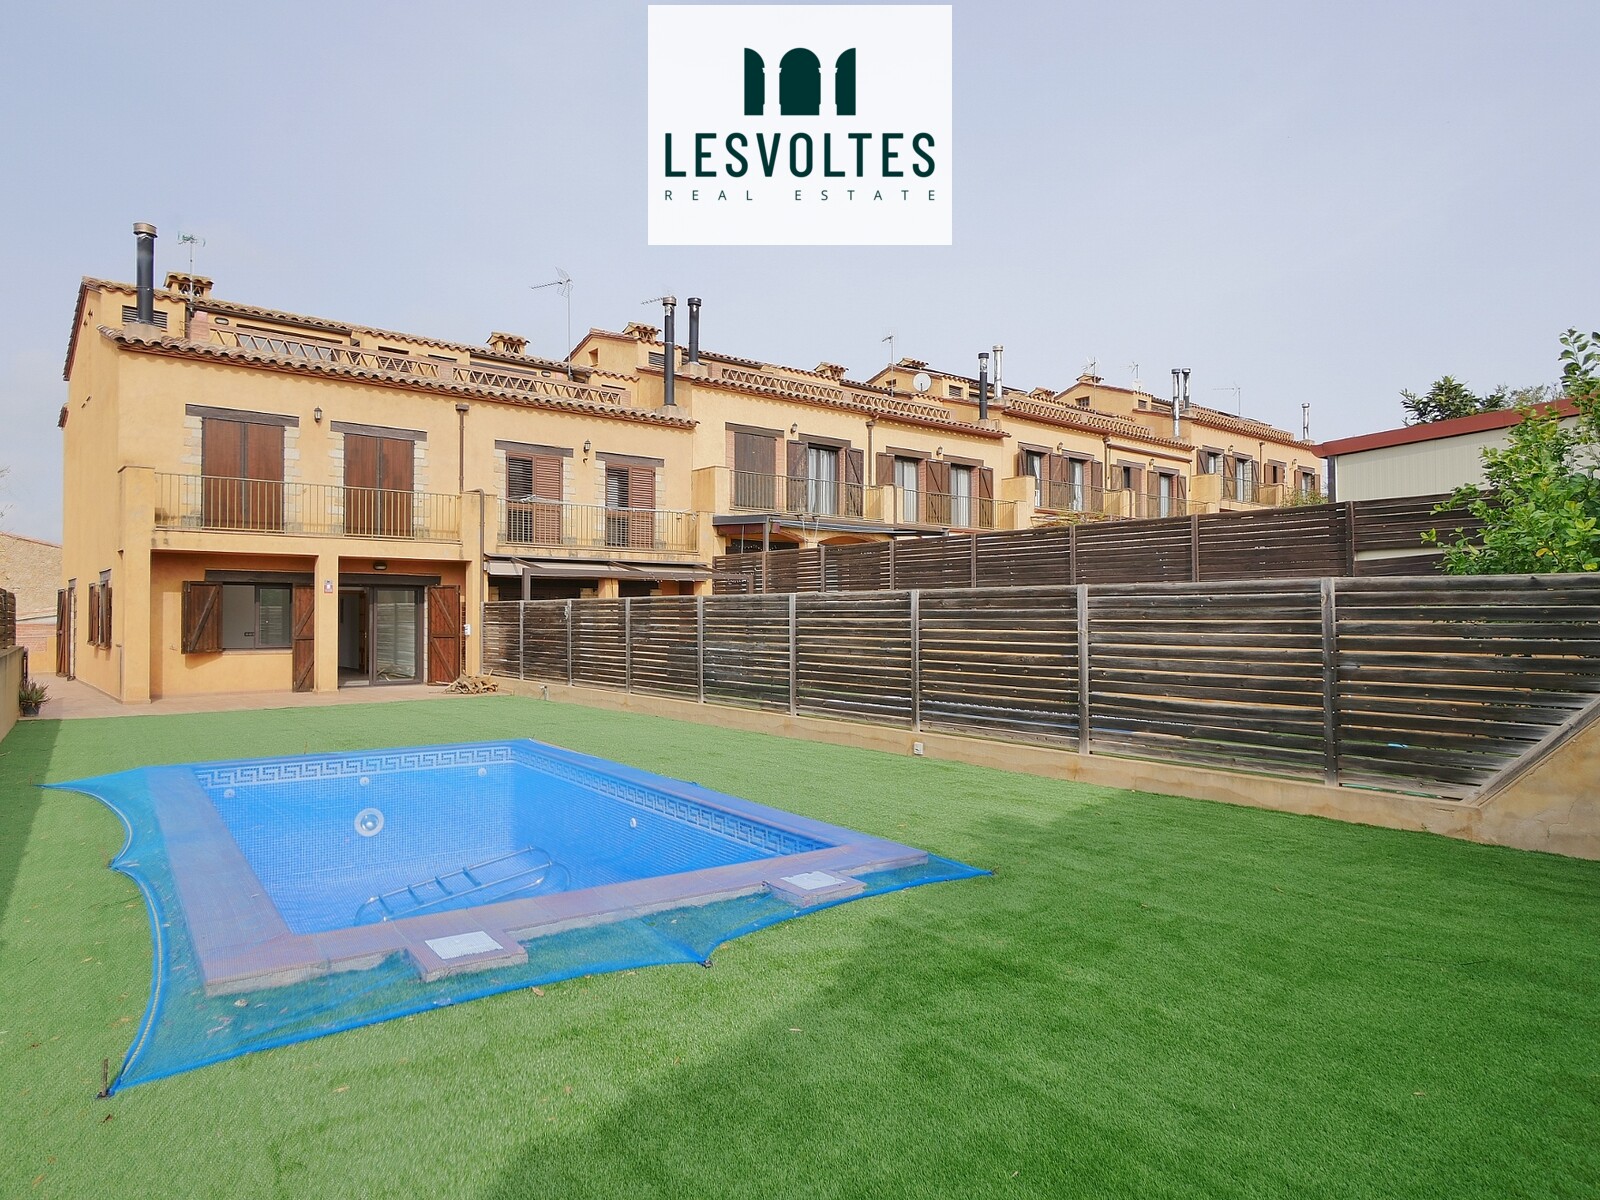 Casa de 250 m² i jardí de 200m² amb piscina, en lloguer per a segona residència a Albons.